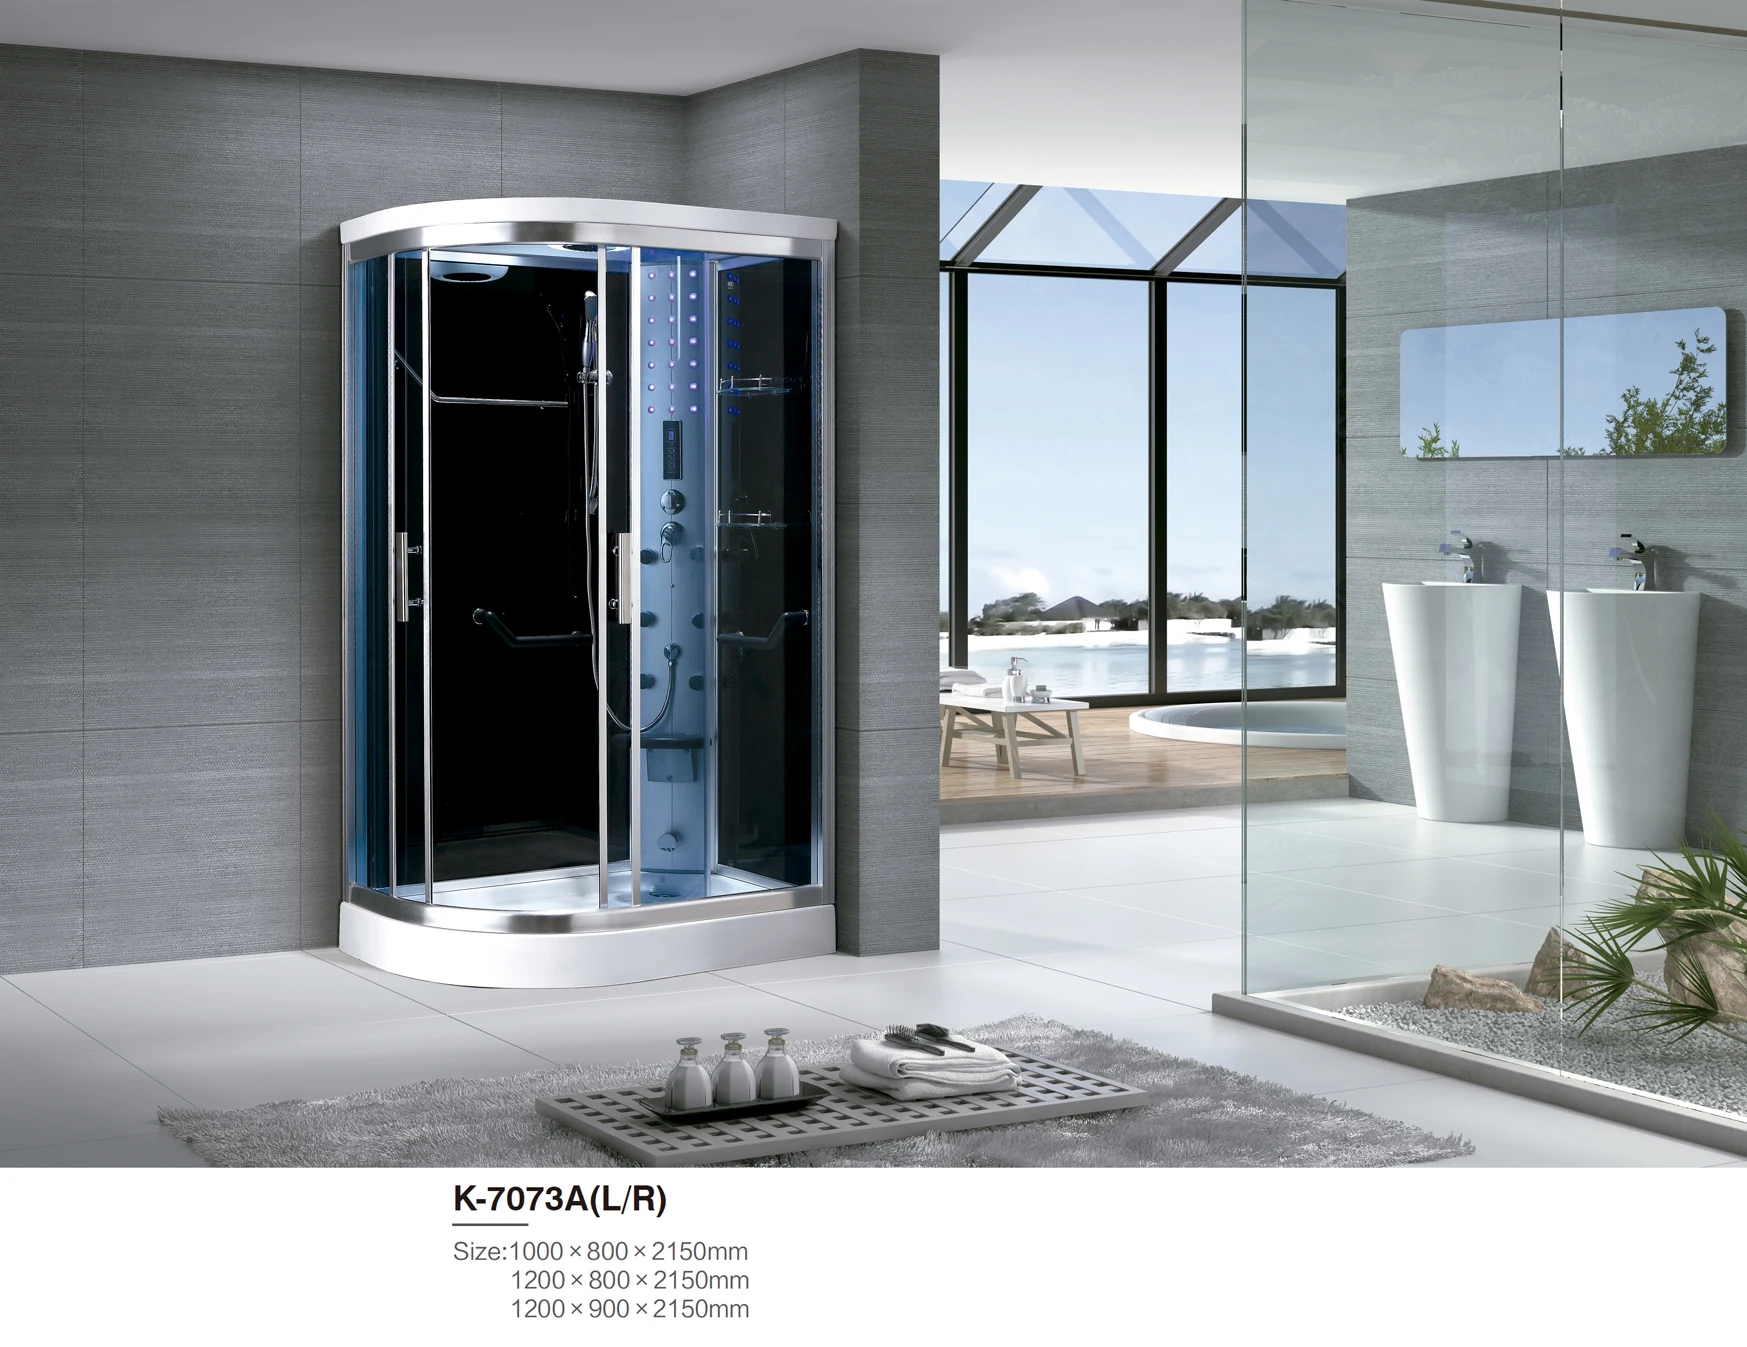 Dubai low price indoor prefab glass door panel massage foot bath steam shower room K7073